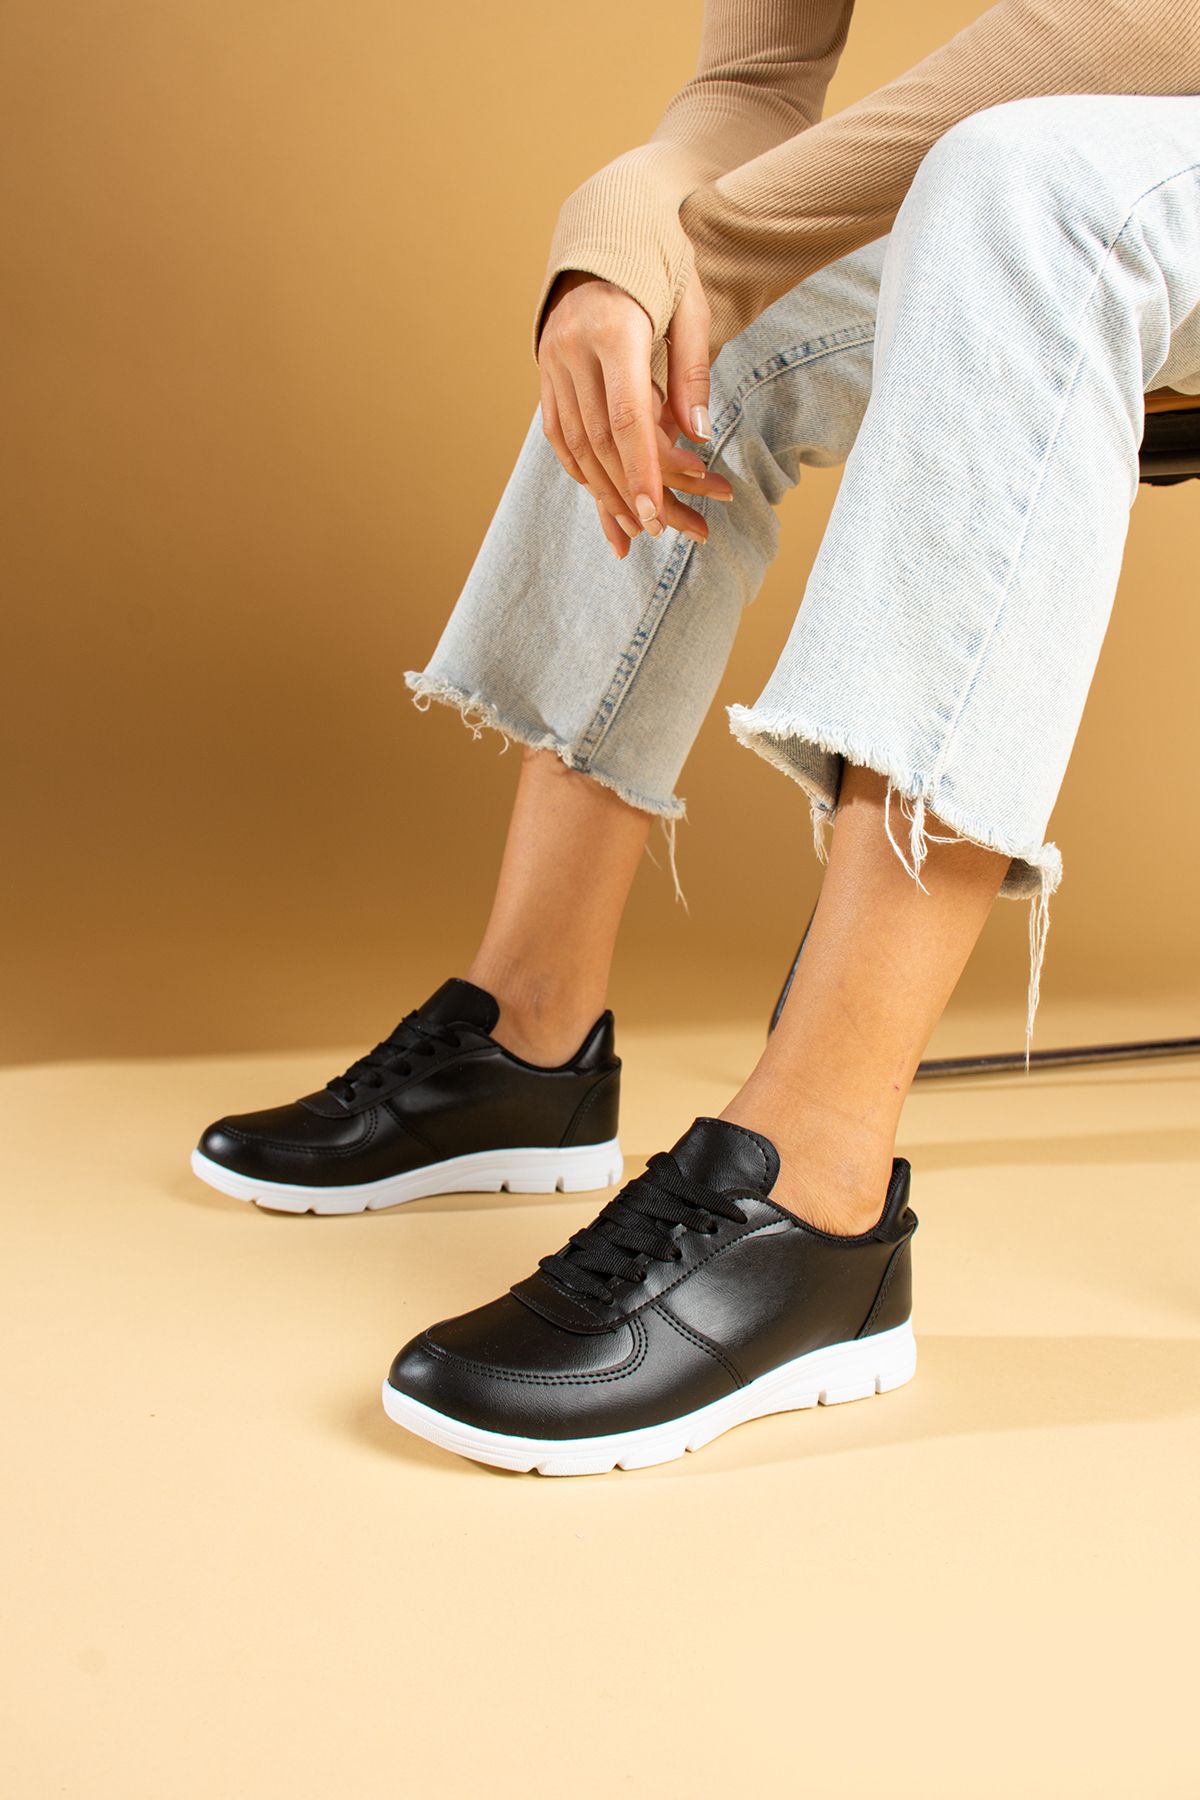 Pembe Potin Kadın Siyah Cilt Bağcıklı Rahat Taban Sneaker Günlük Spor Ayakkabı